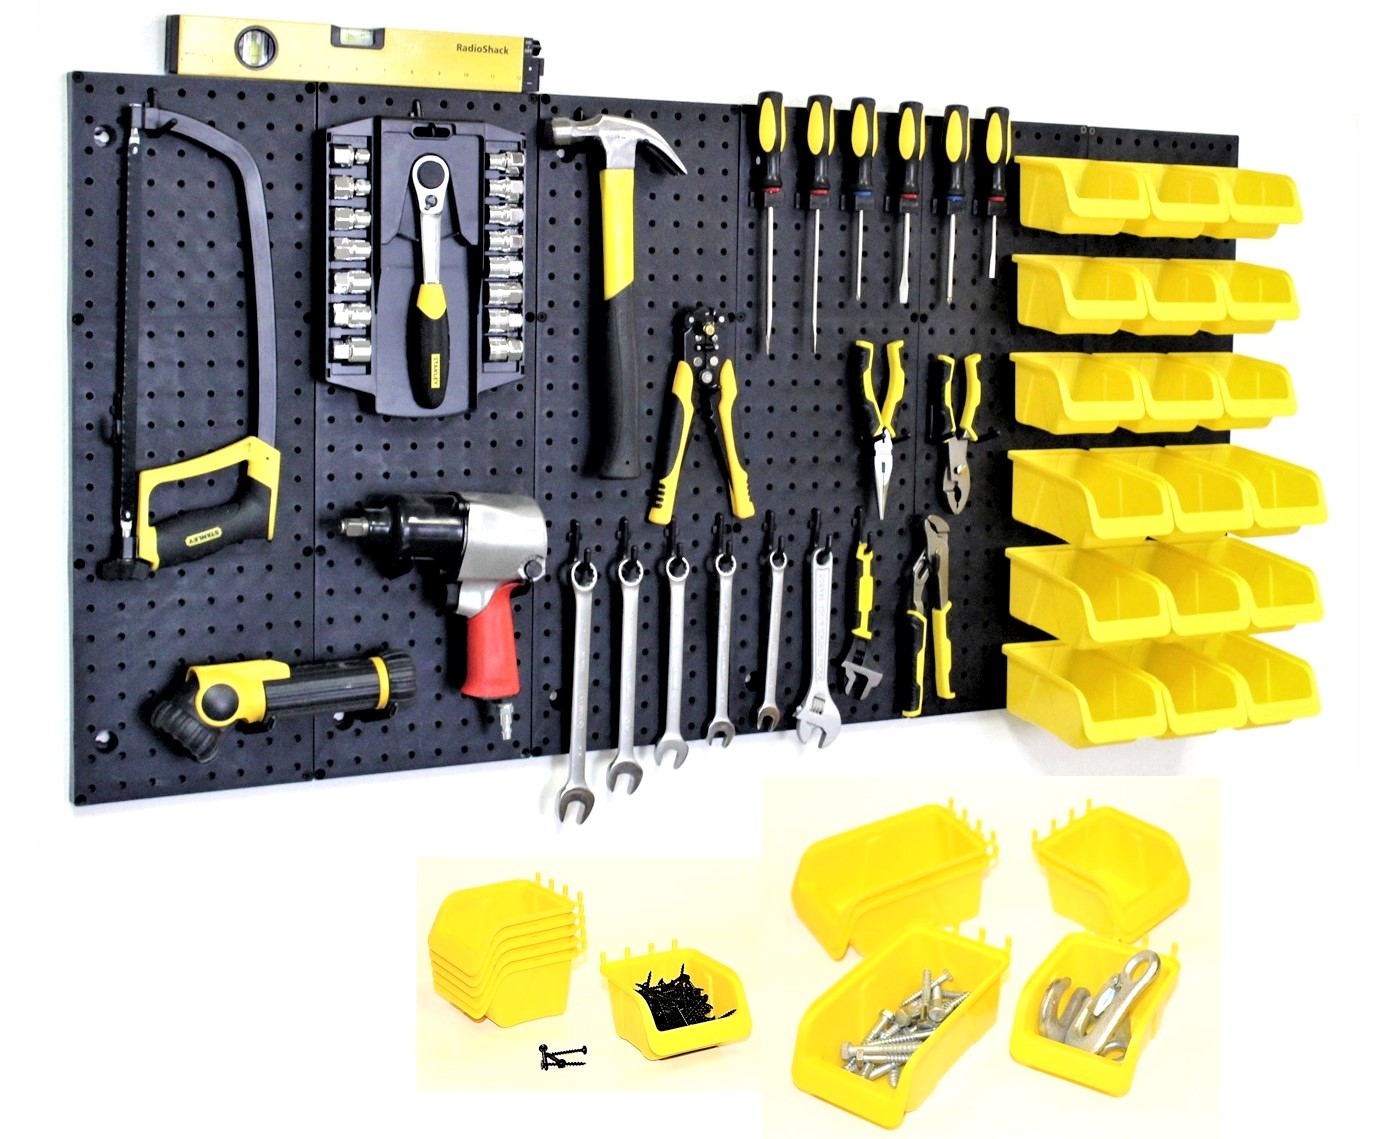 Pegboard Bin Kit 8 Pack Storage Parts Craft Organizer Workbench Bins Accessories 